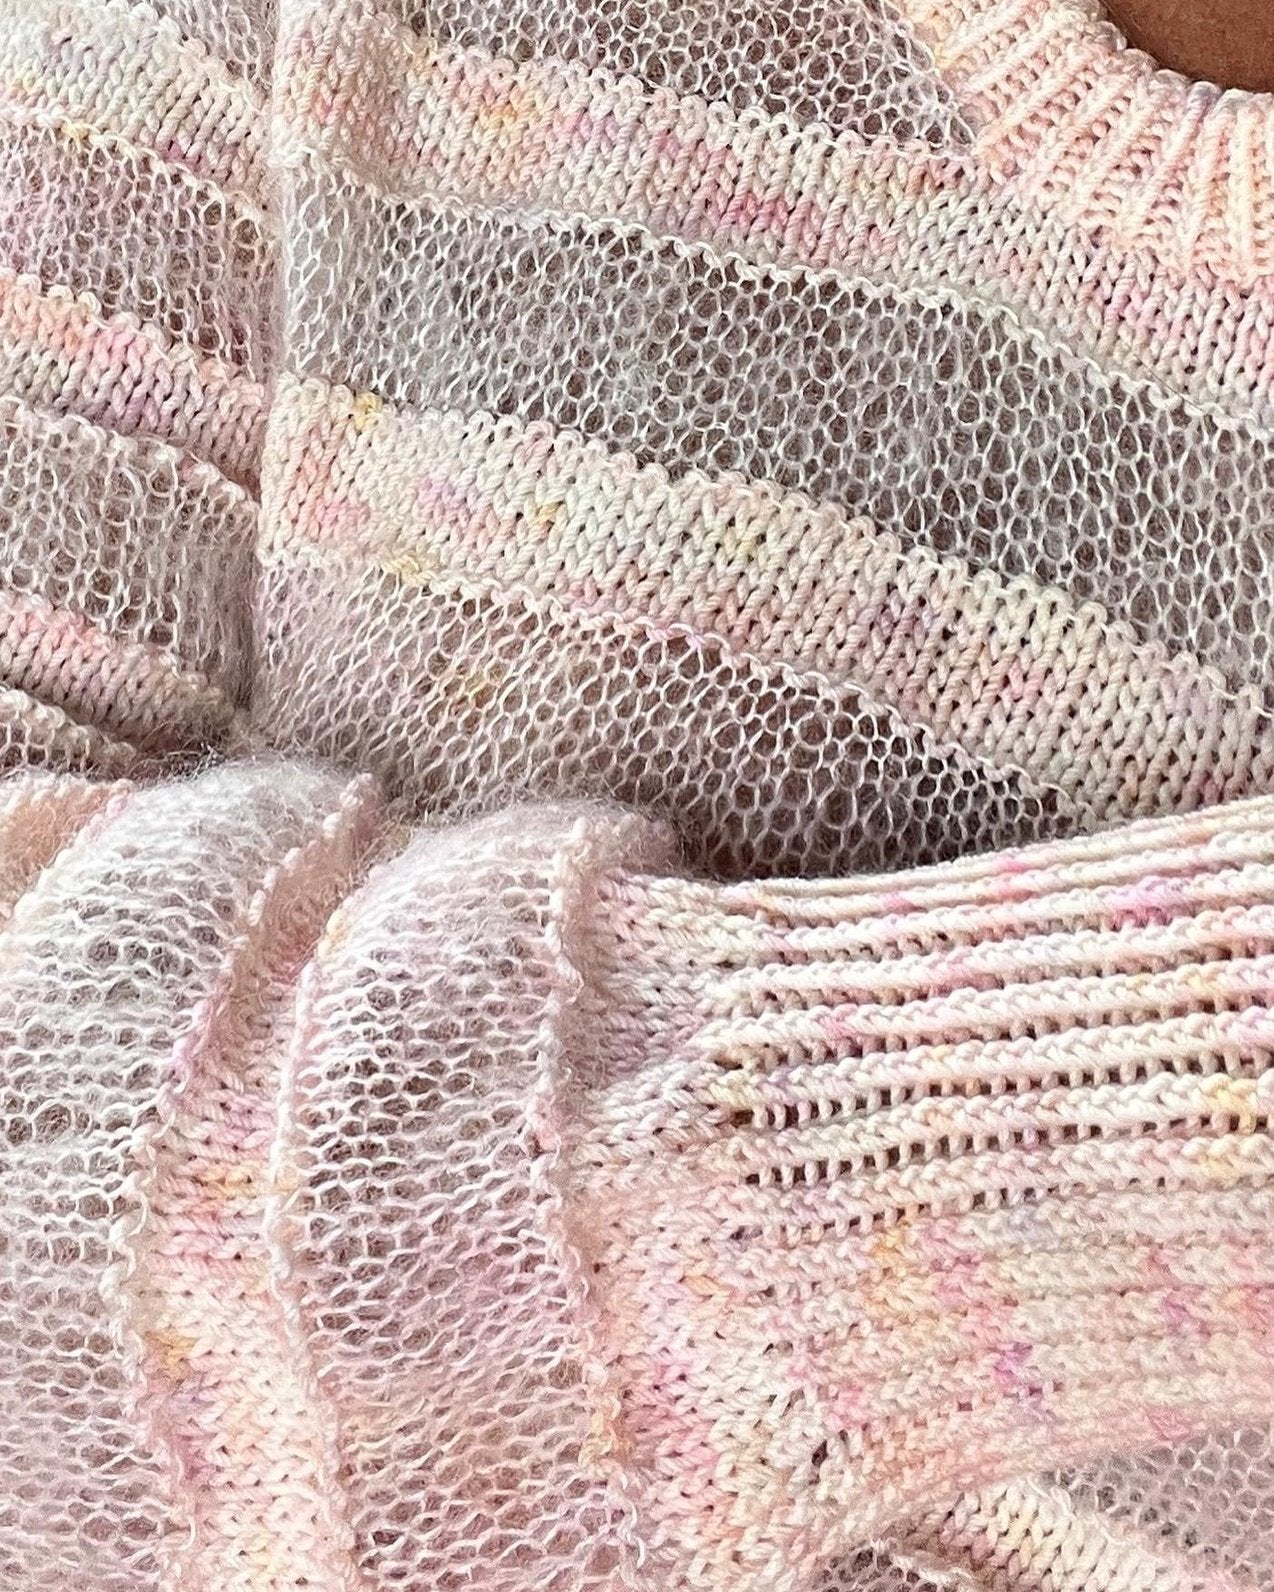 Straight Up Sweater Norsk Popknit strikkeoppskrift